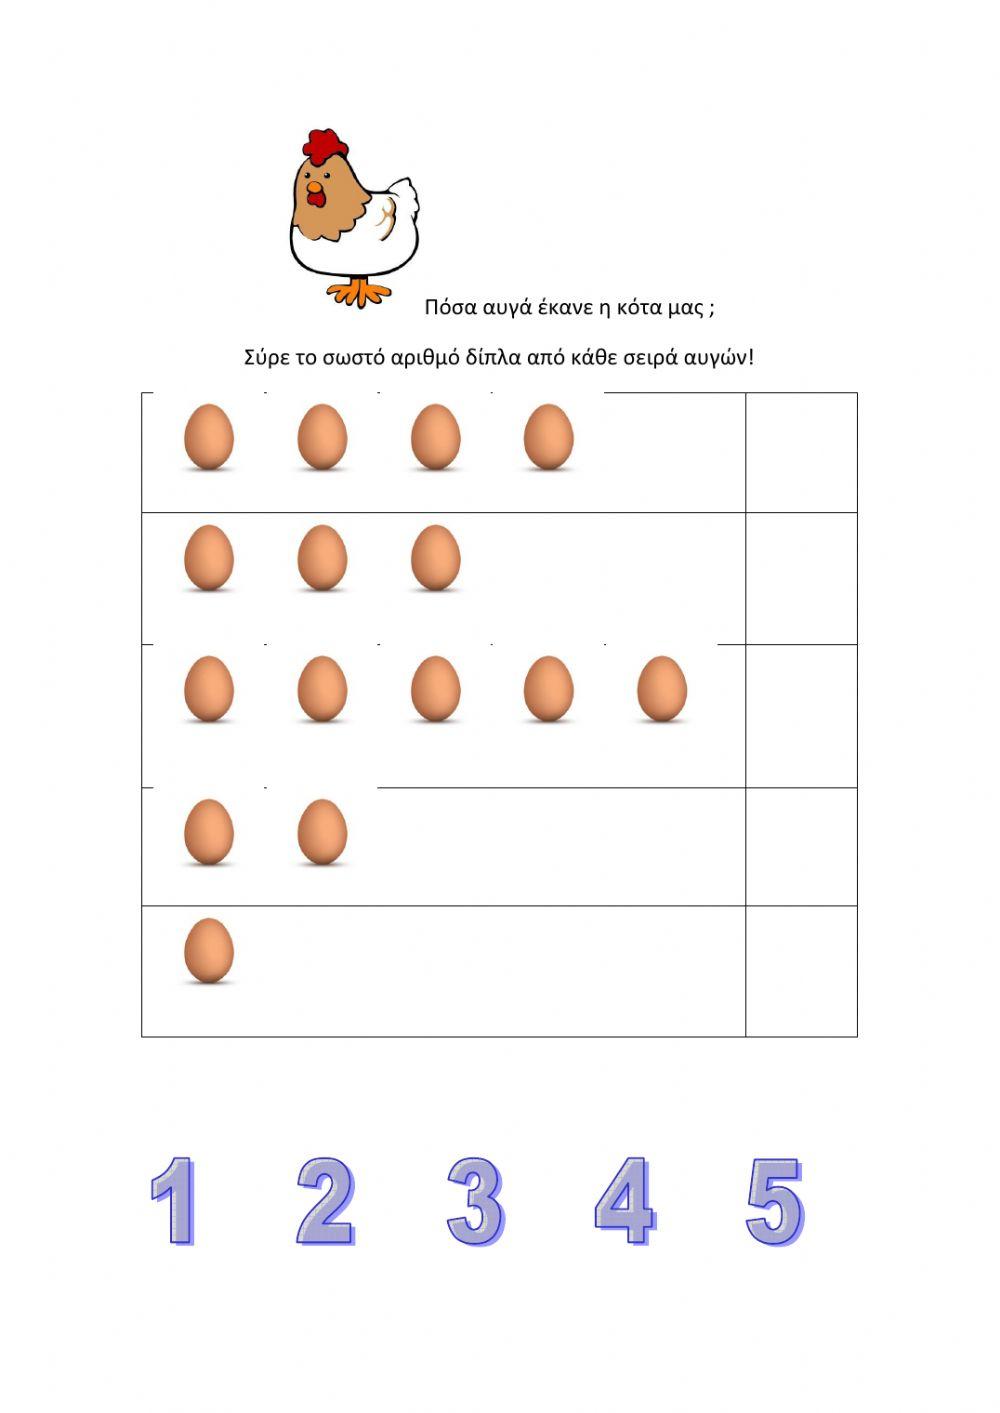 Ποσα αυγα εκανε η κοτα-